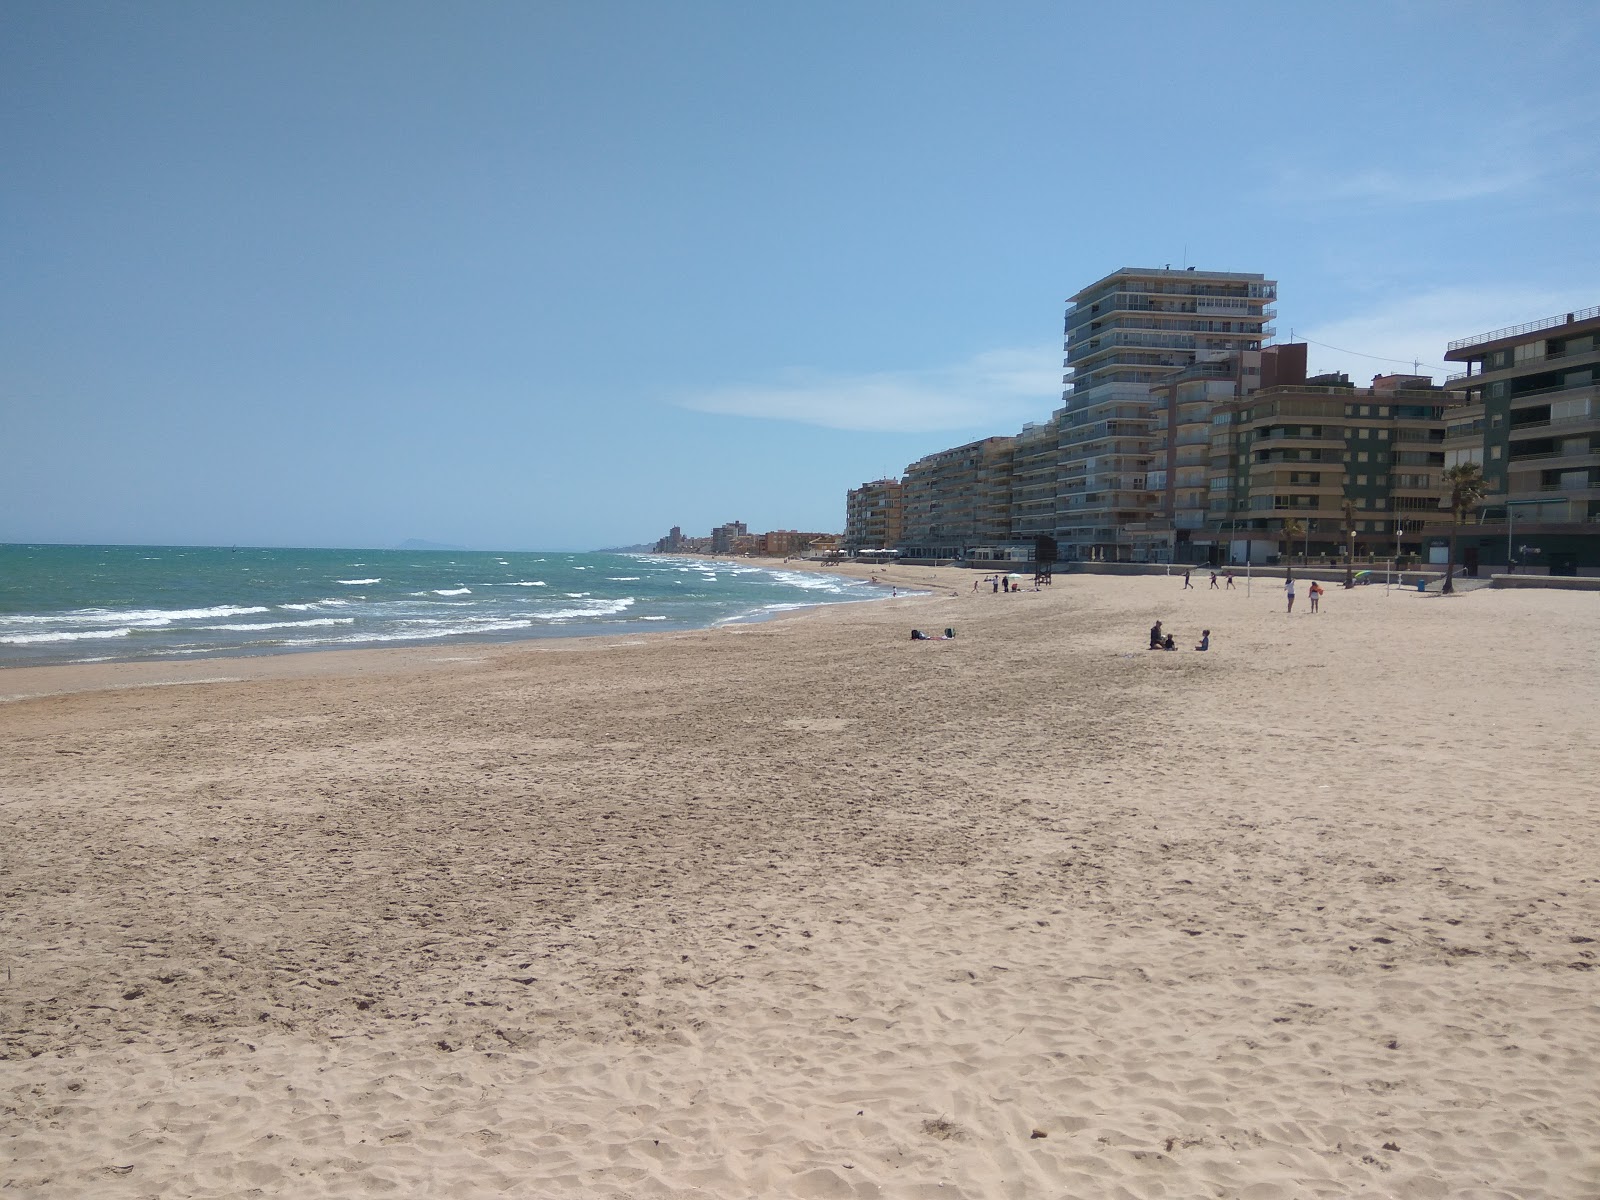 El Perellonet Plajı'in fotoğrafı kahverengi kum yüzey ile